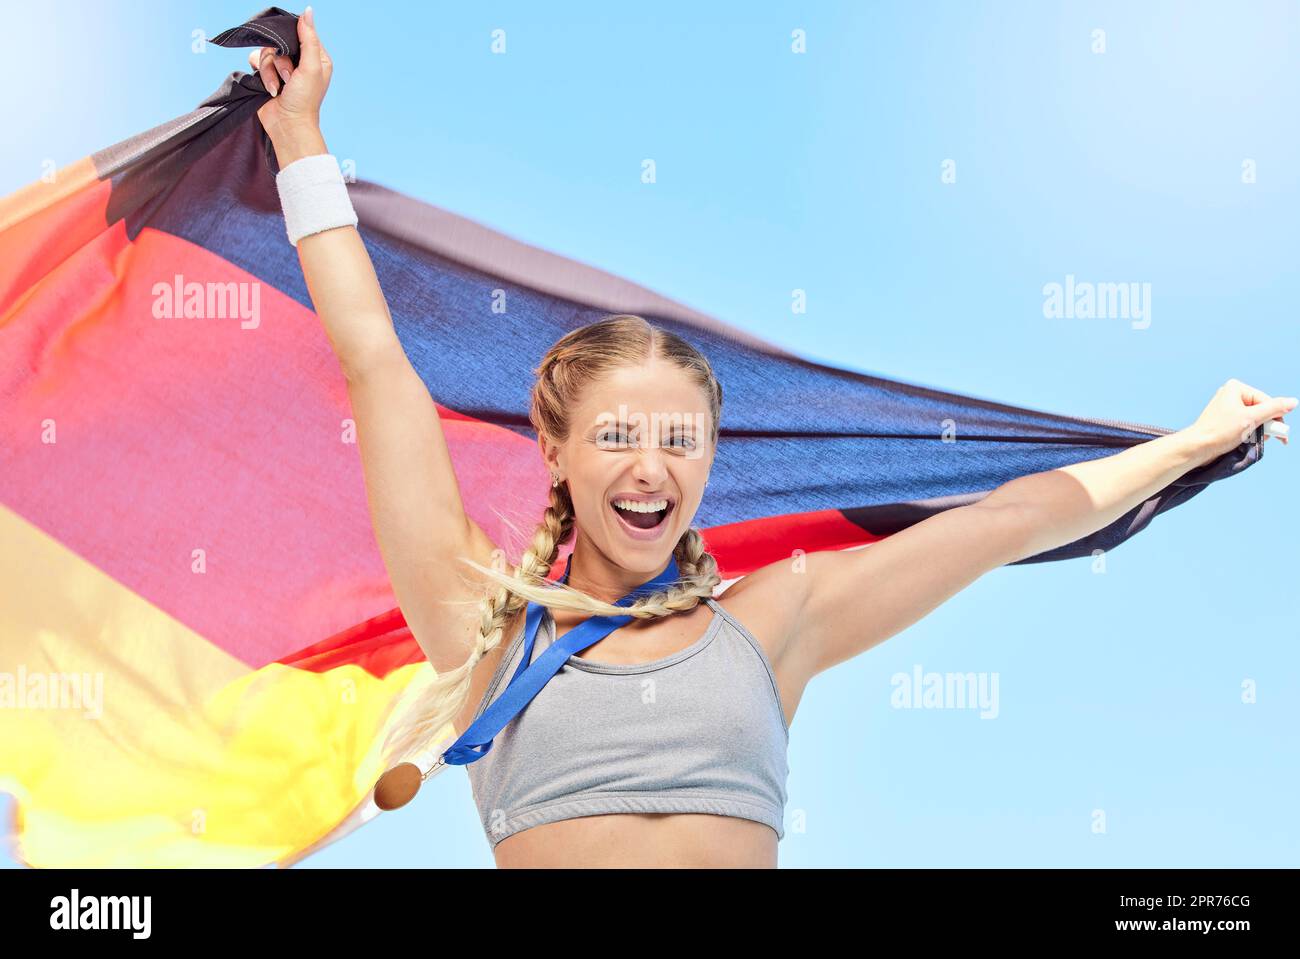 Portrait des erfolgreichen Athleten, der nach einem Sportwettbewerb die deutsche Flagge hielt. Lächelnde Passform aktiv sportlich motivierte Frau. Wir feiern mit Nationalstolz, dass wir im olympischen Sport eine Goldmedaille erhalten haben Stockfoto